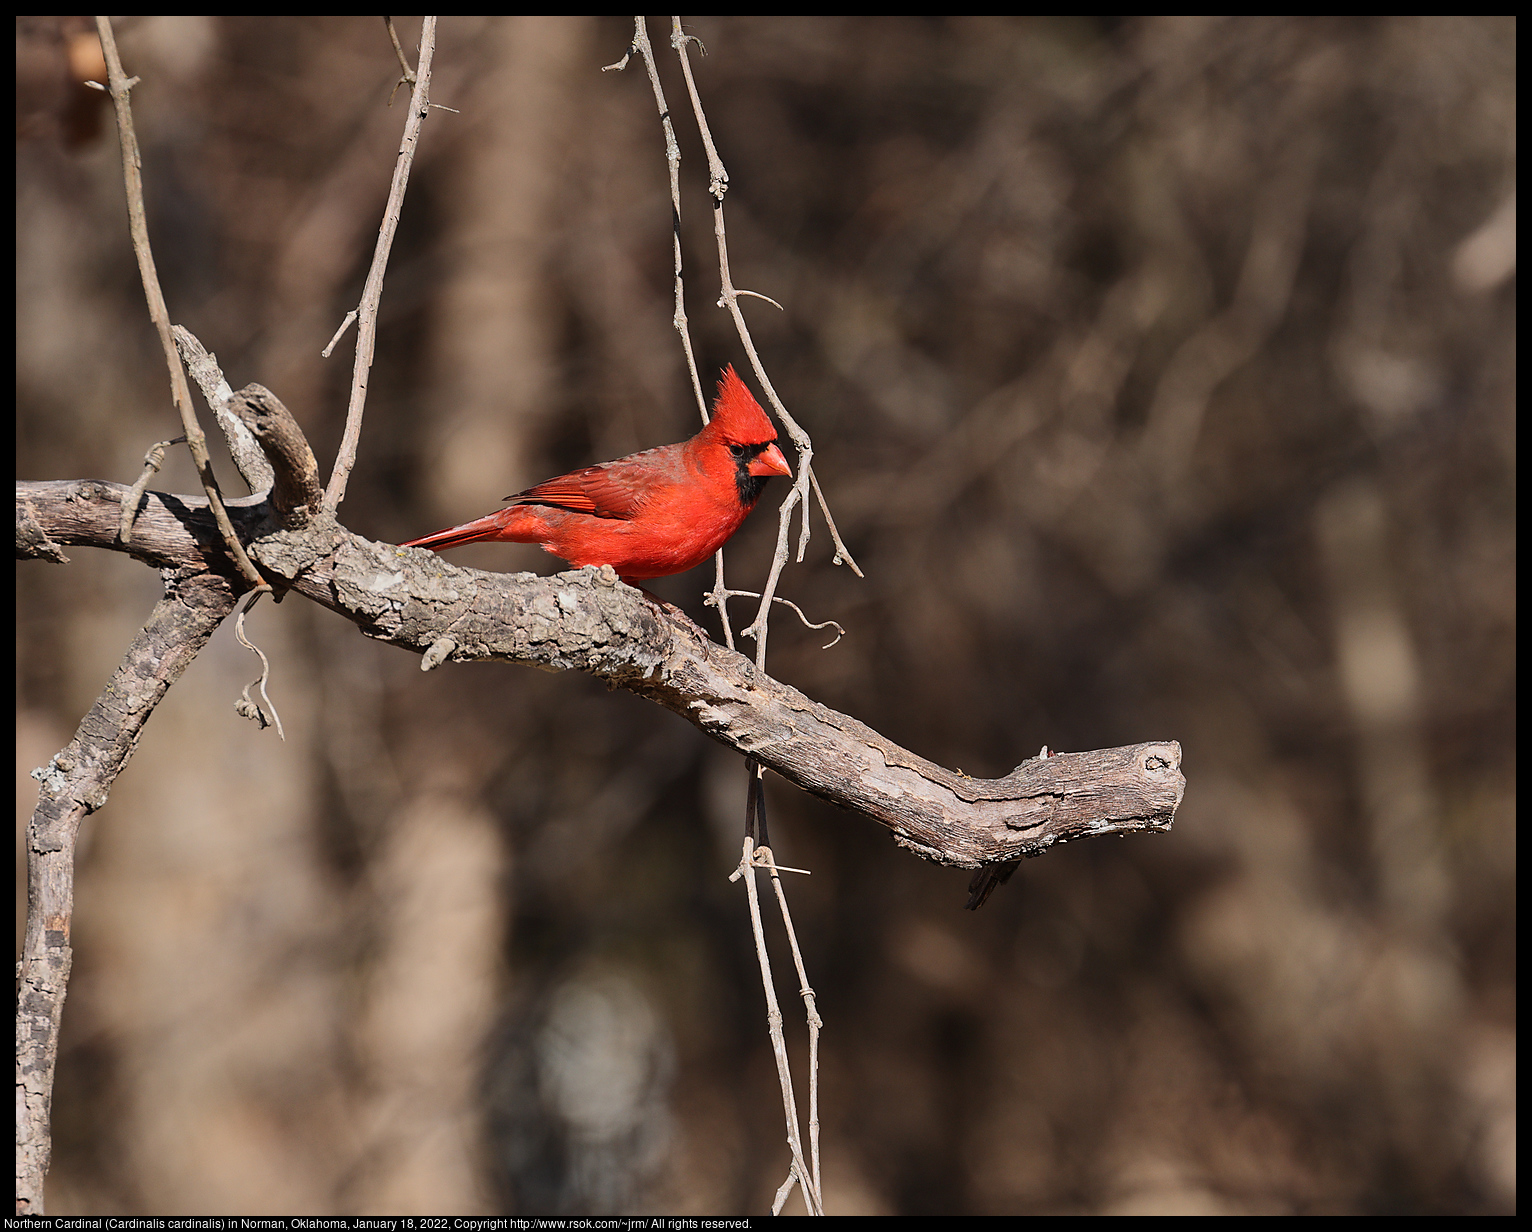 Northern Cardinal (Cardinalis cardinalis) in Norman, Oklahoma, January 18, 2022